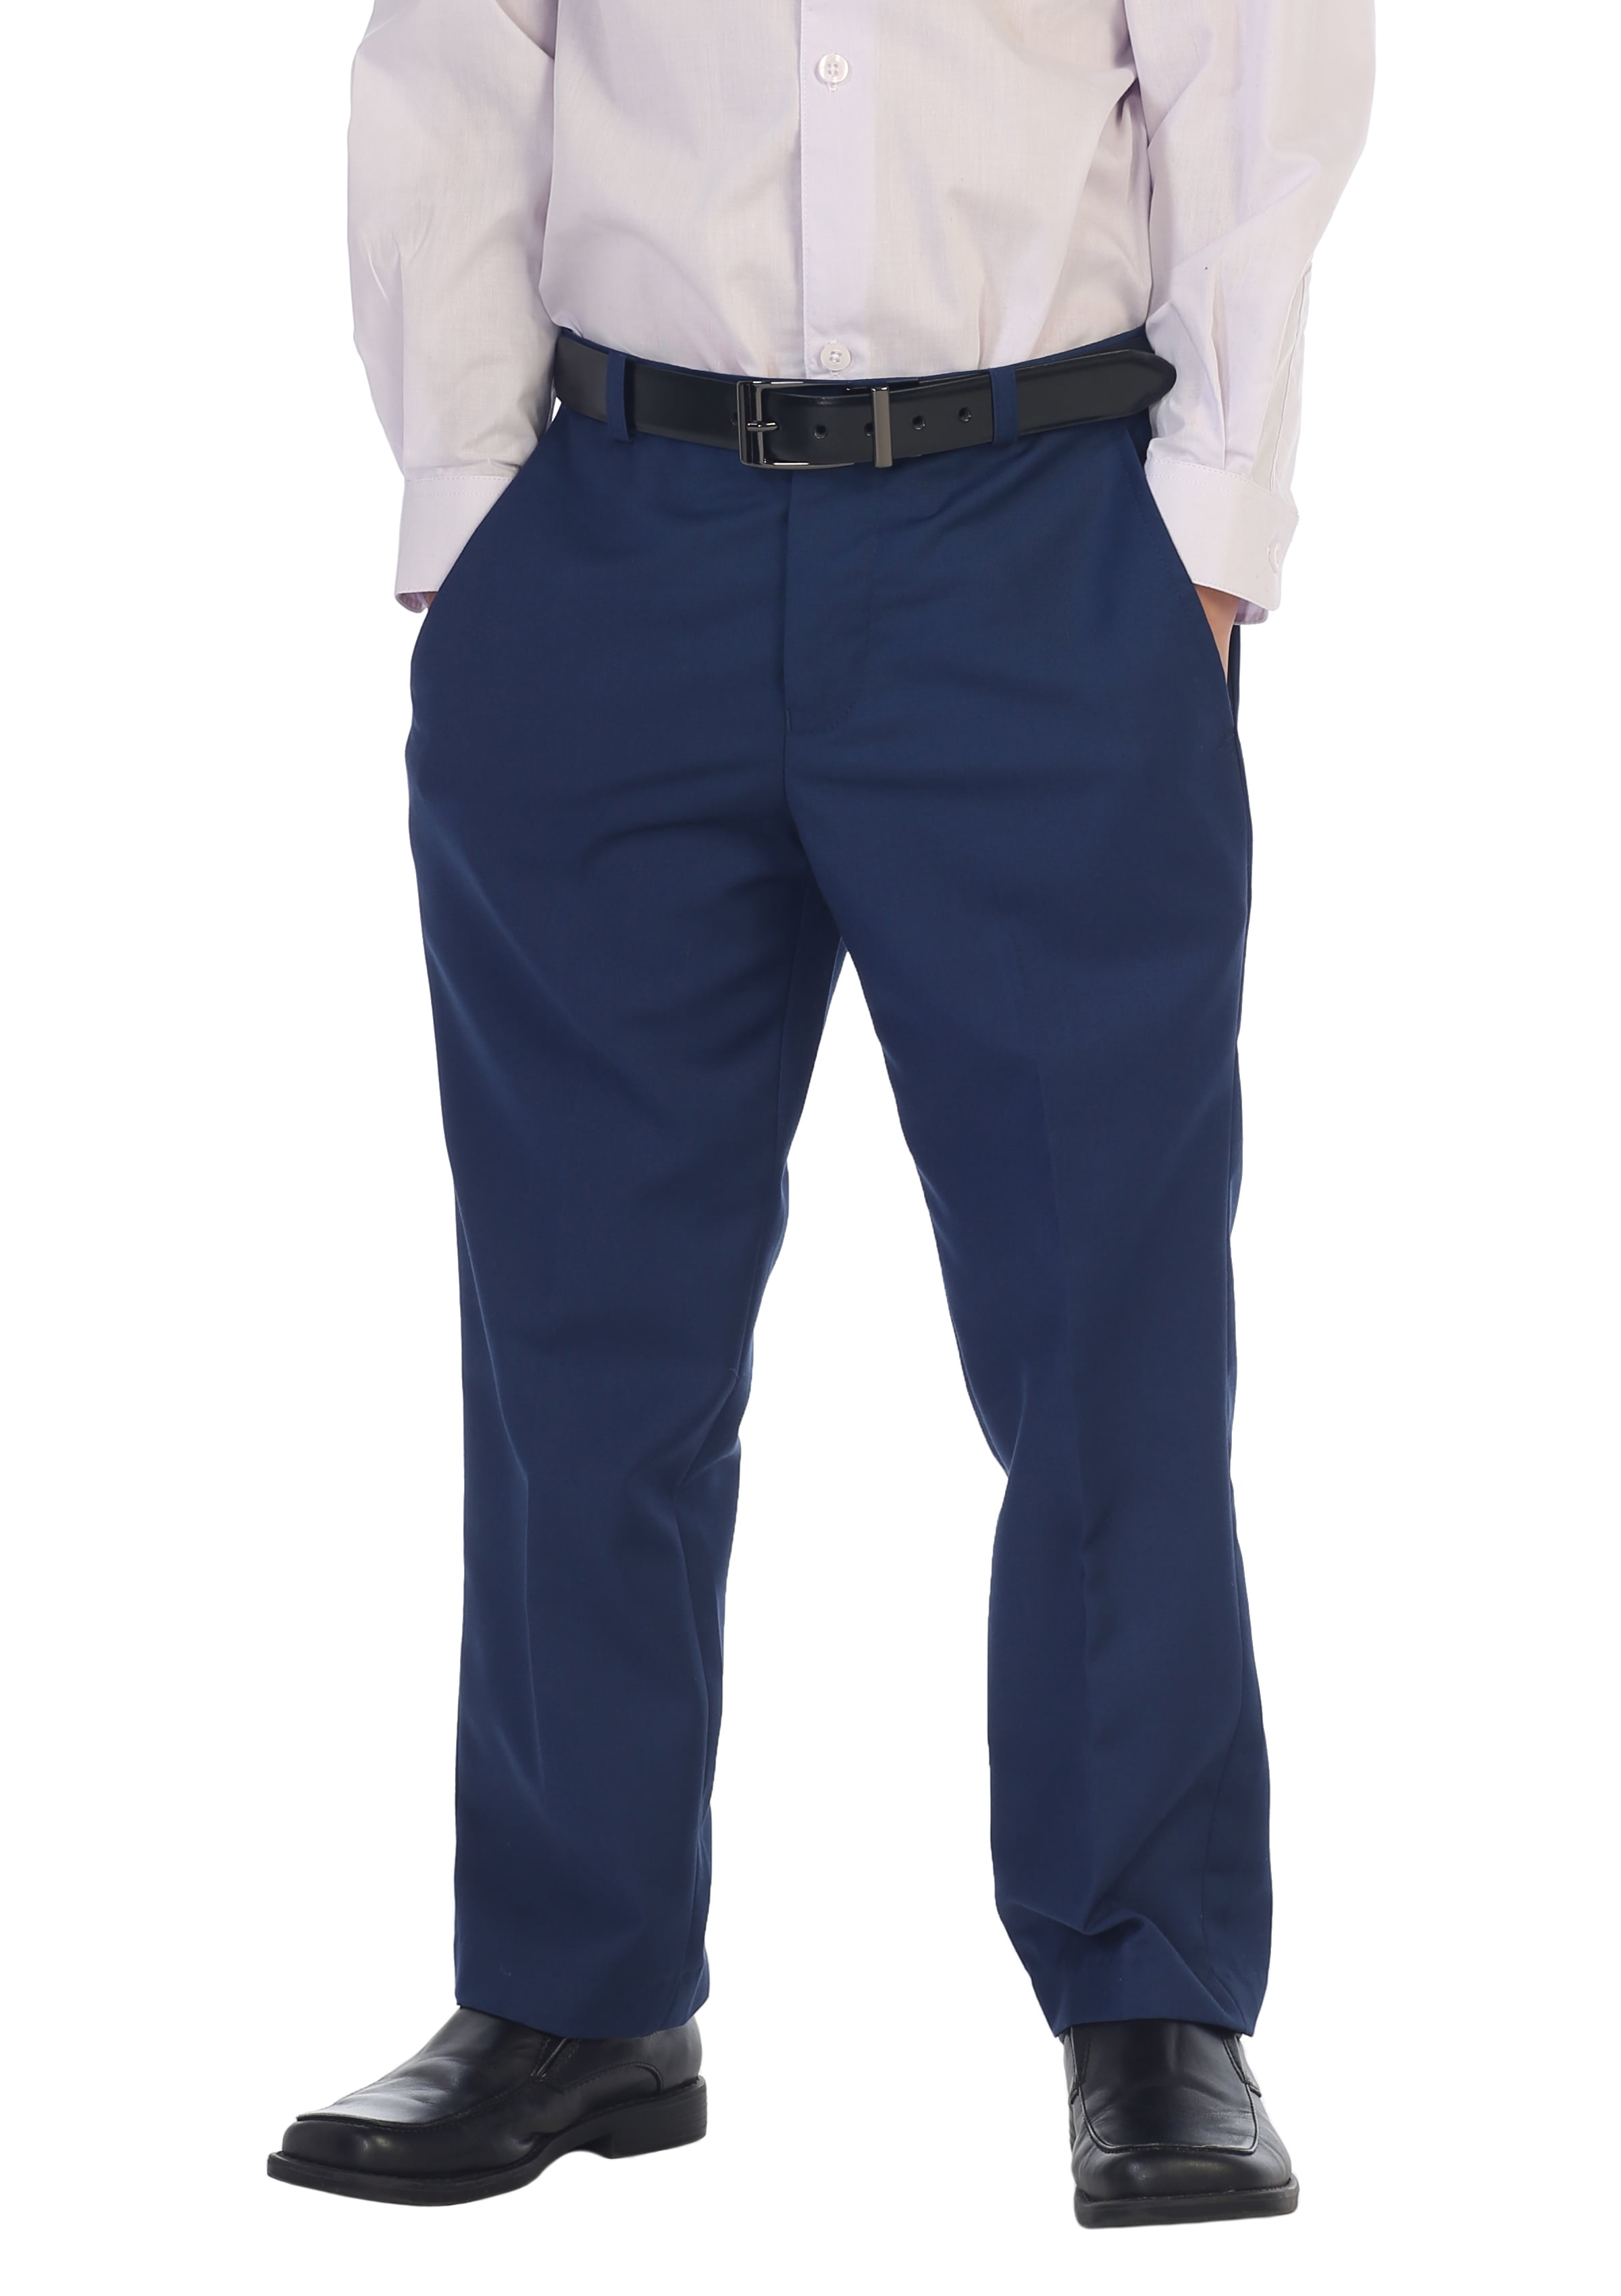 Amazon.com: Plsily Boys 4 Pieces Suit Suspender Outfit Vest Set Size 2,  Navy Blue-bowtie(black): Clothing, Shoes & Jewelry